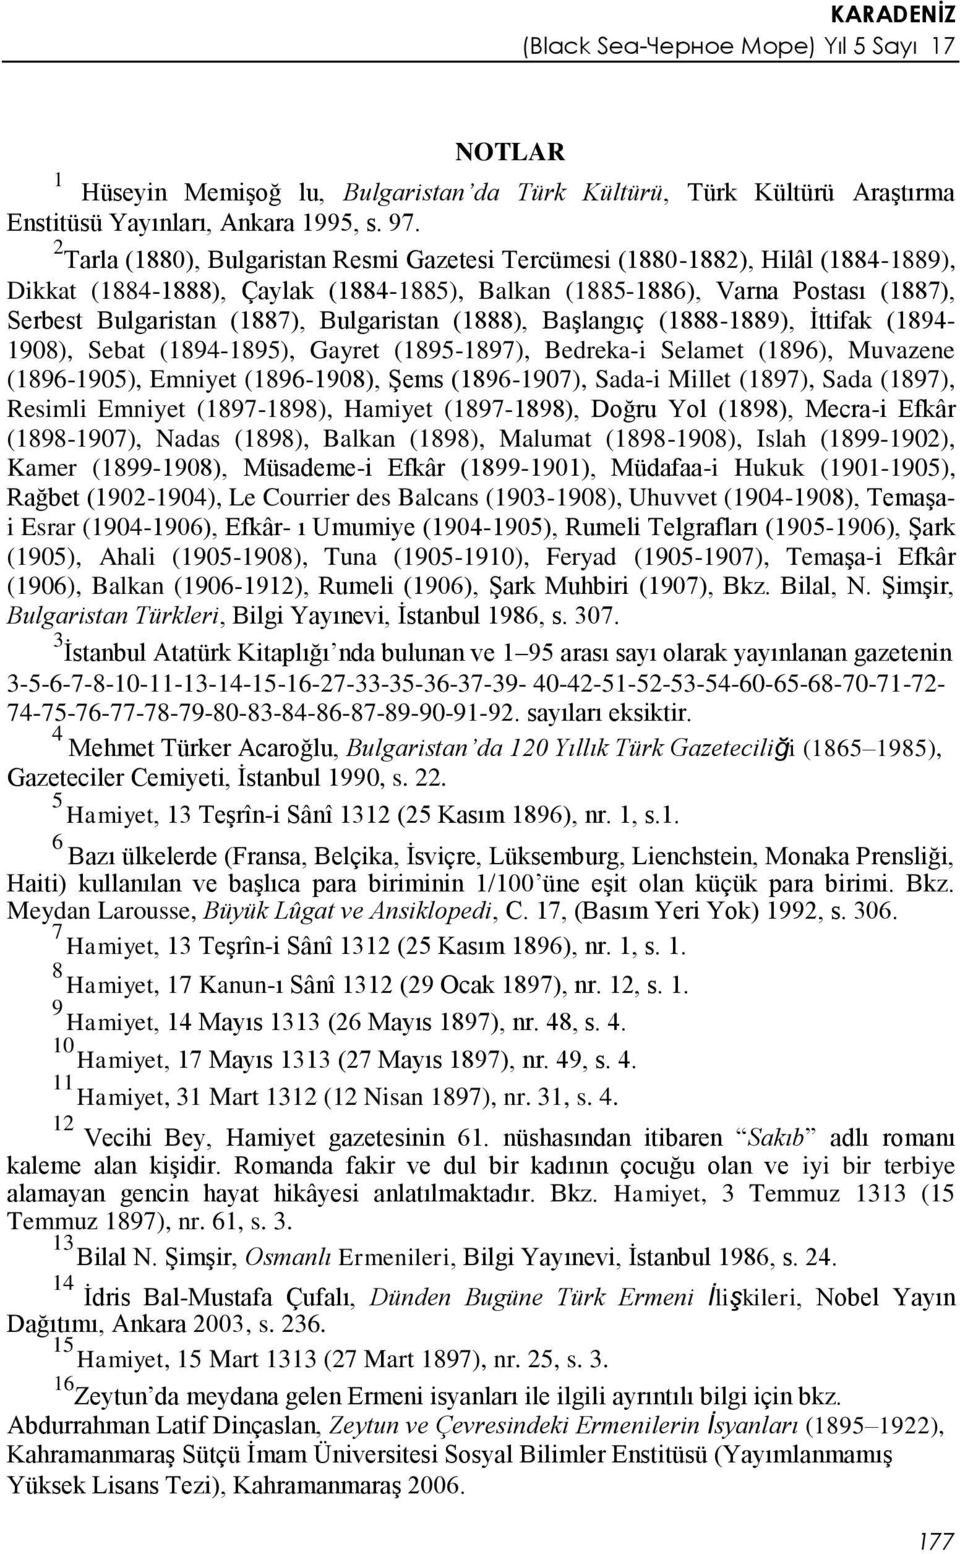 Bulgaristan (1888), Başlangıç (1888-1889), İttifak (1894-1908), Sebat (1894-1895), Gayret (1895-1897), Bedreka-i Selamet (1896), Muvazene (1896-1905), Emniyet (1896-1908), Şems (1896-1907), Sada-i